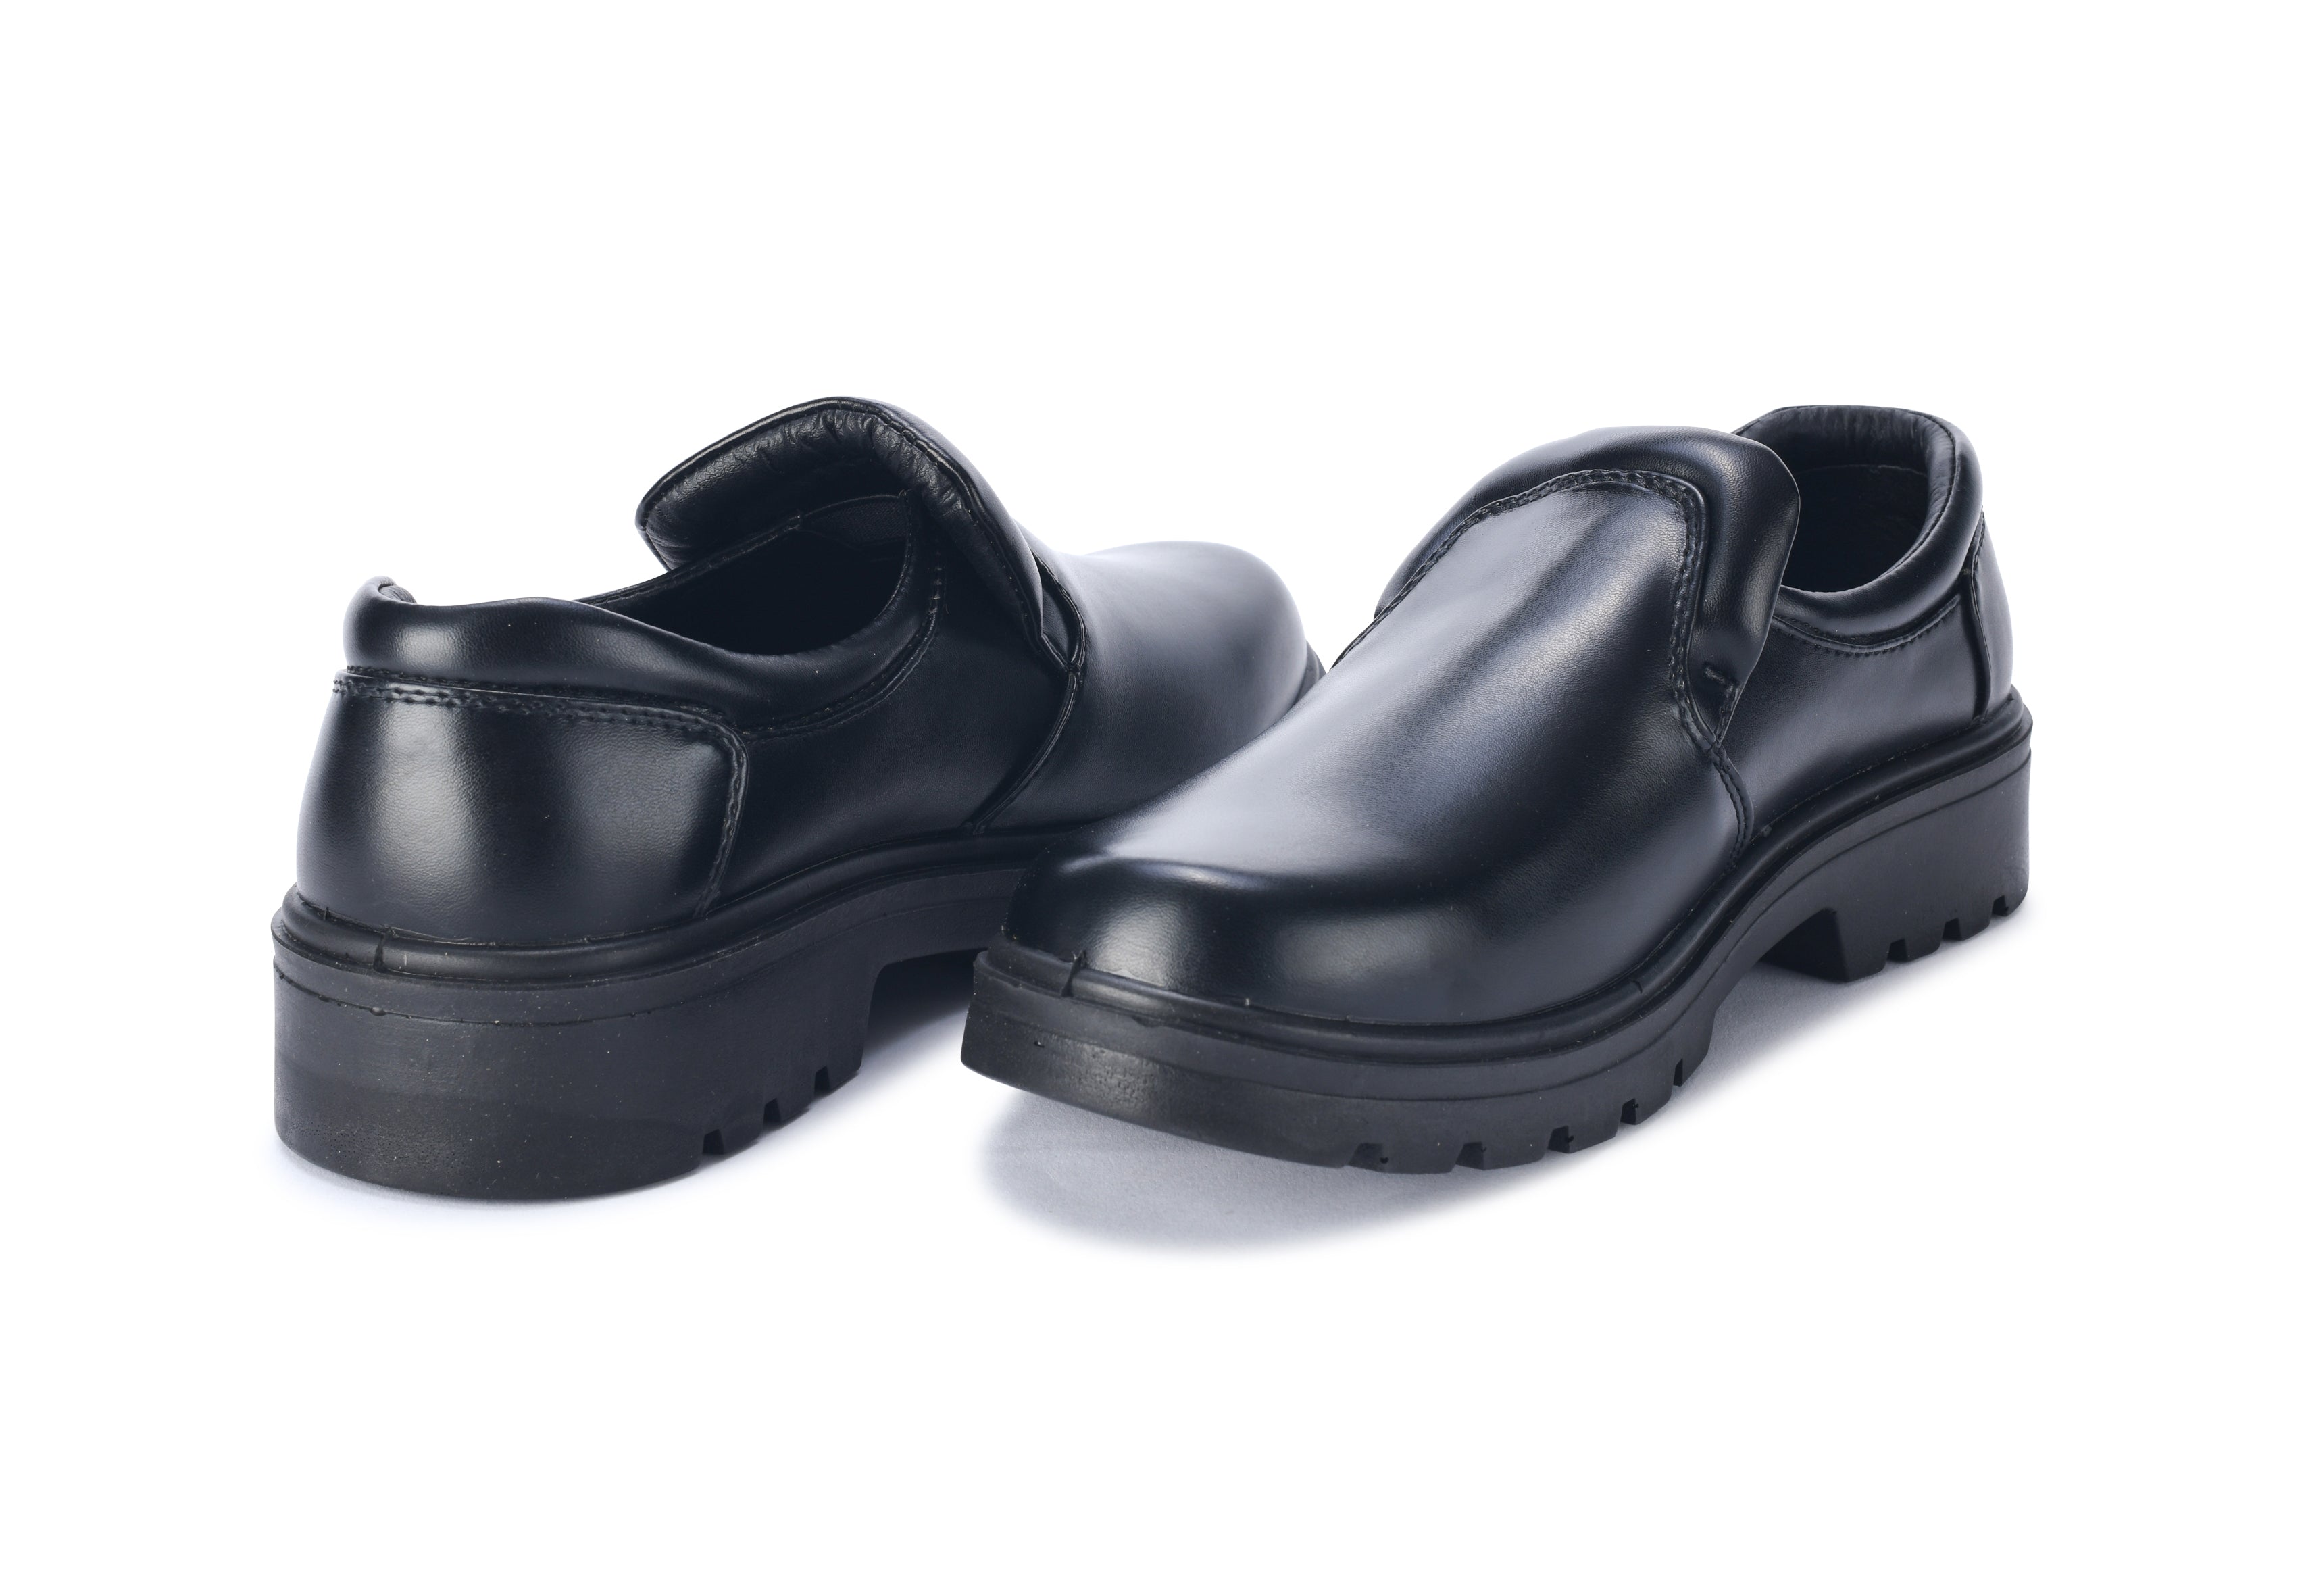 85529 Smooth Kitchen Shoes (Slip-Ons)-TOURIST-BK-EU Size: 37-偉豐鞋 WELL SHOE HK-Well Shoe-偉豐鞋-偉豐網-荃灣鞋店-Functional shoes-Hong Kong Tsuen Wan Shoe Store-Tai Wan Shoe-Japan Shoe-高品質功能鞋-台灣進口鞋-日本進口鞋-High-quality shoes-鞋類配件-荃灣進口鞋-香港鞋店-優質鞋類產品-水靴-帆布鞋-廚師鞋-香港鞋品牌-Hong Kong Shoes brand-長者鞋-Hong Kong Rain Boots-Kitchen shoes-Cruthes-Slipper-Well Shoe Hong Kong-Anello-Arriba-休閒鞋-舒適鞋-健康鞋-皮鞋-Healthy shoes-Leather shoes-Hiking shoes